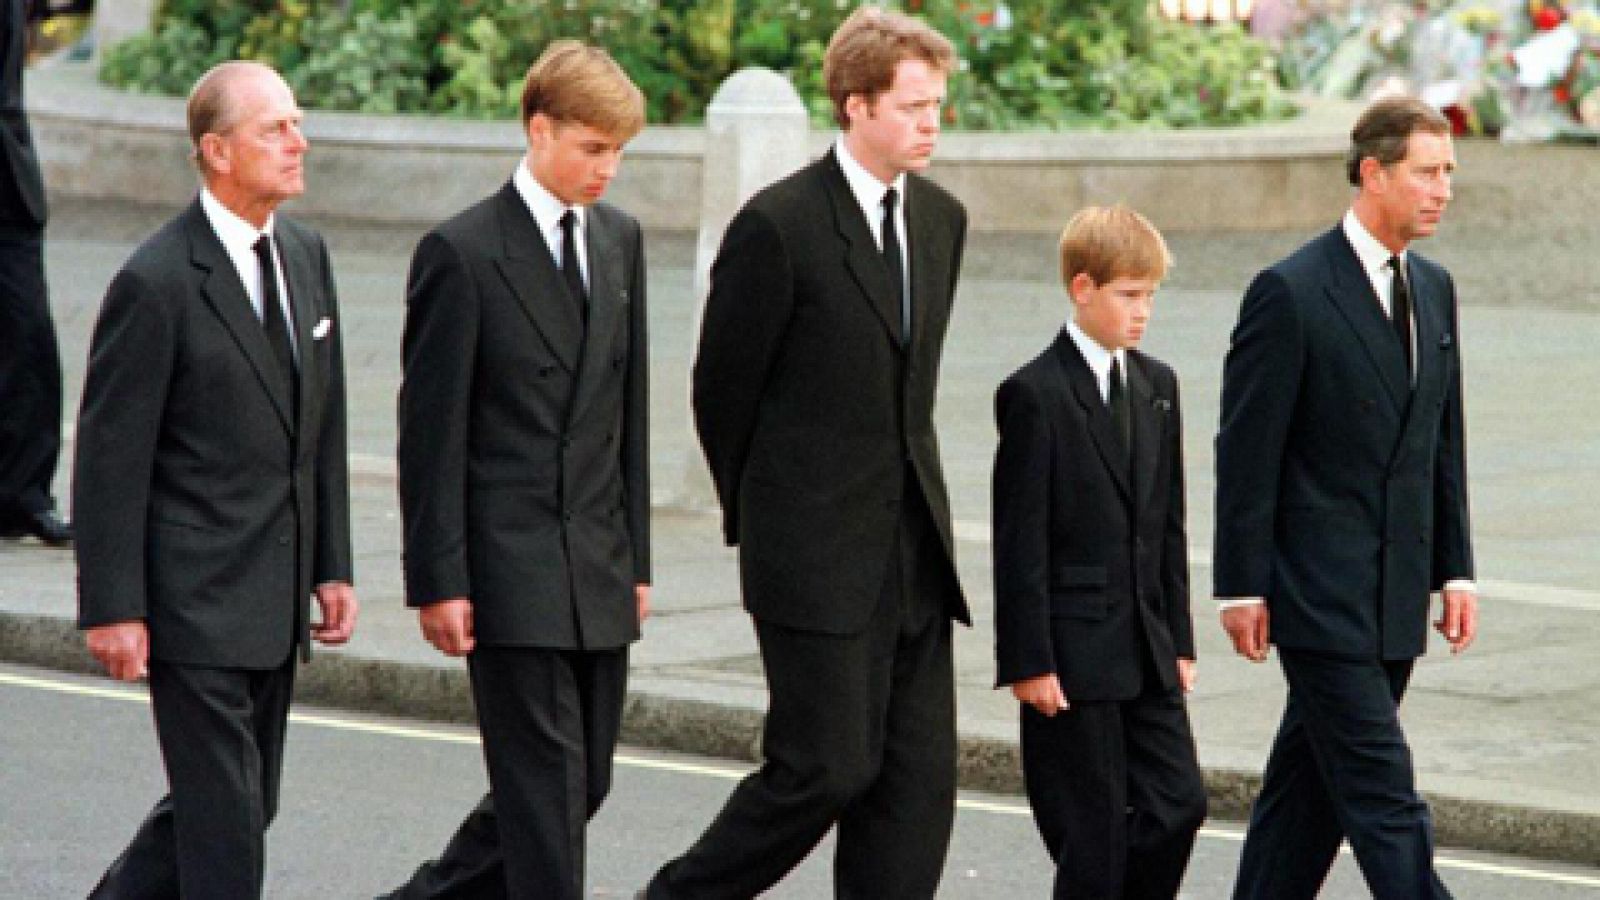 Fue Informe - Adis, Diana (Funeral de Diana de Gales) - Ver ahora